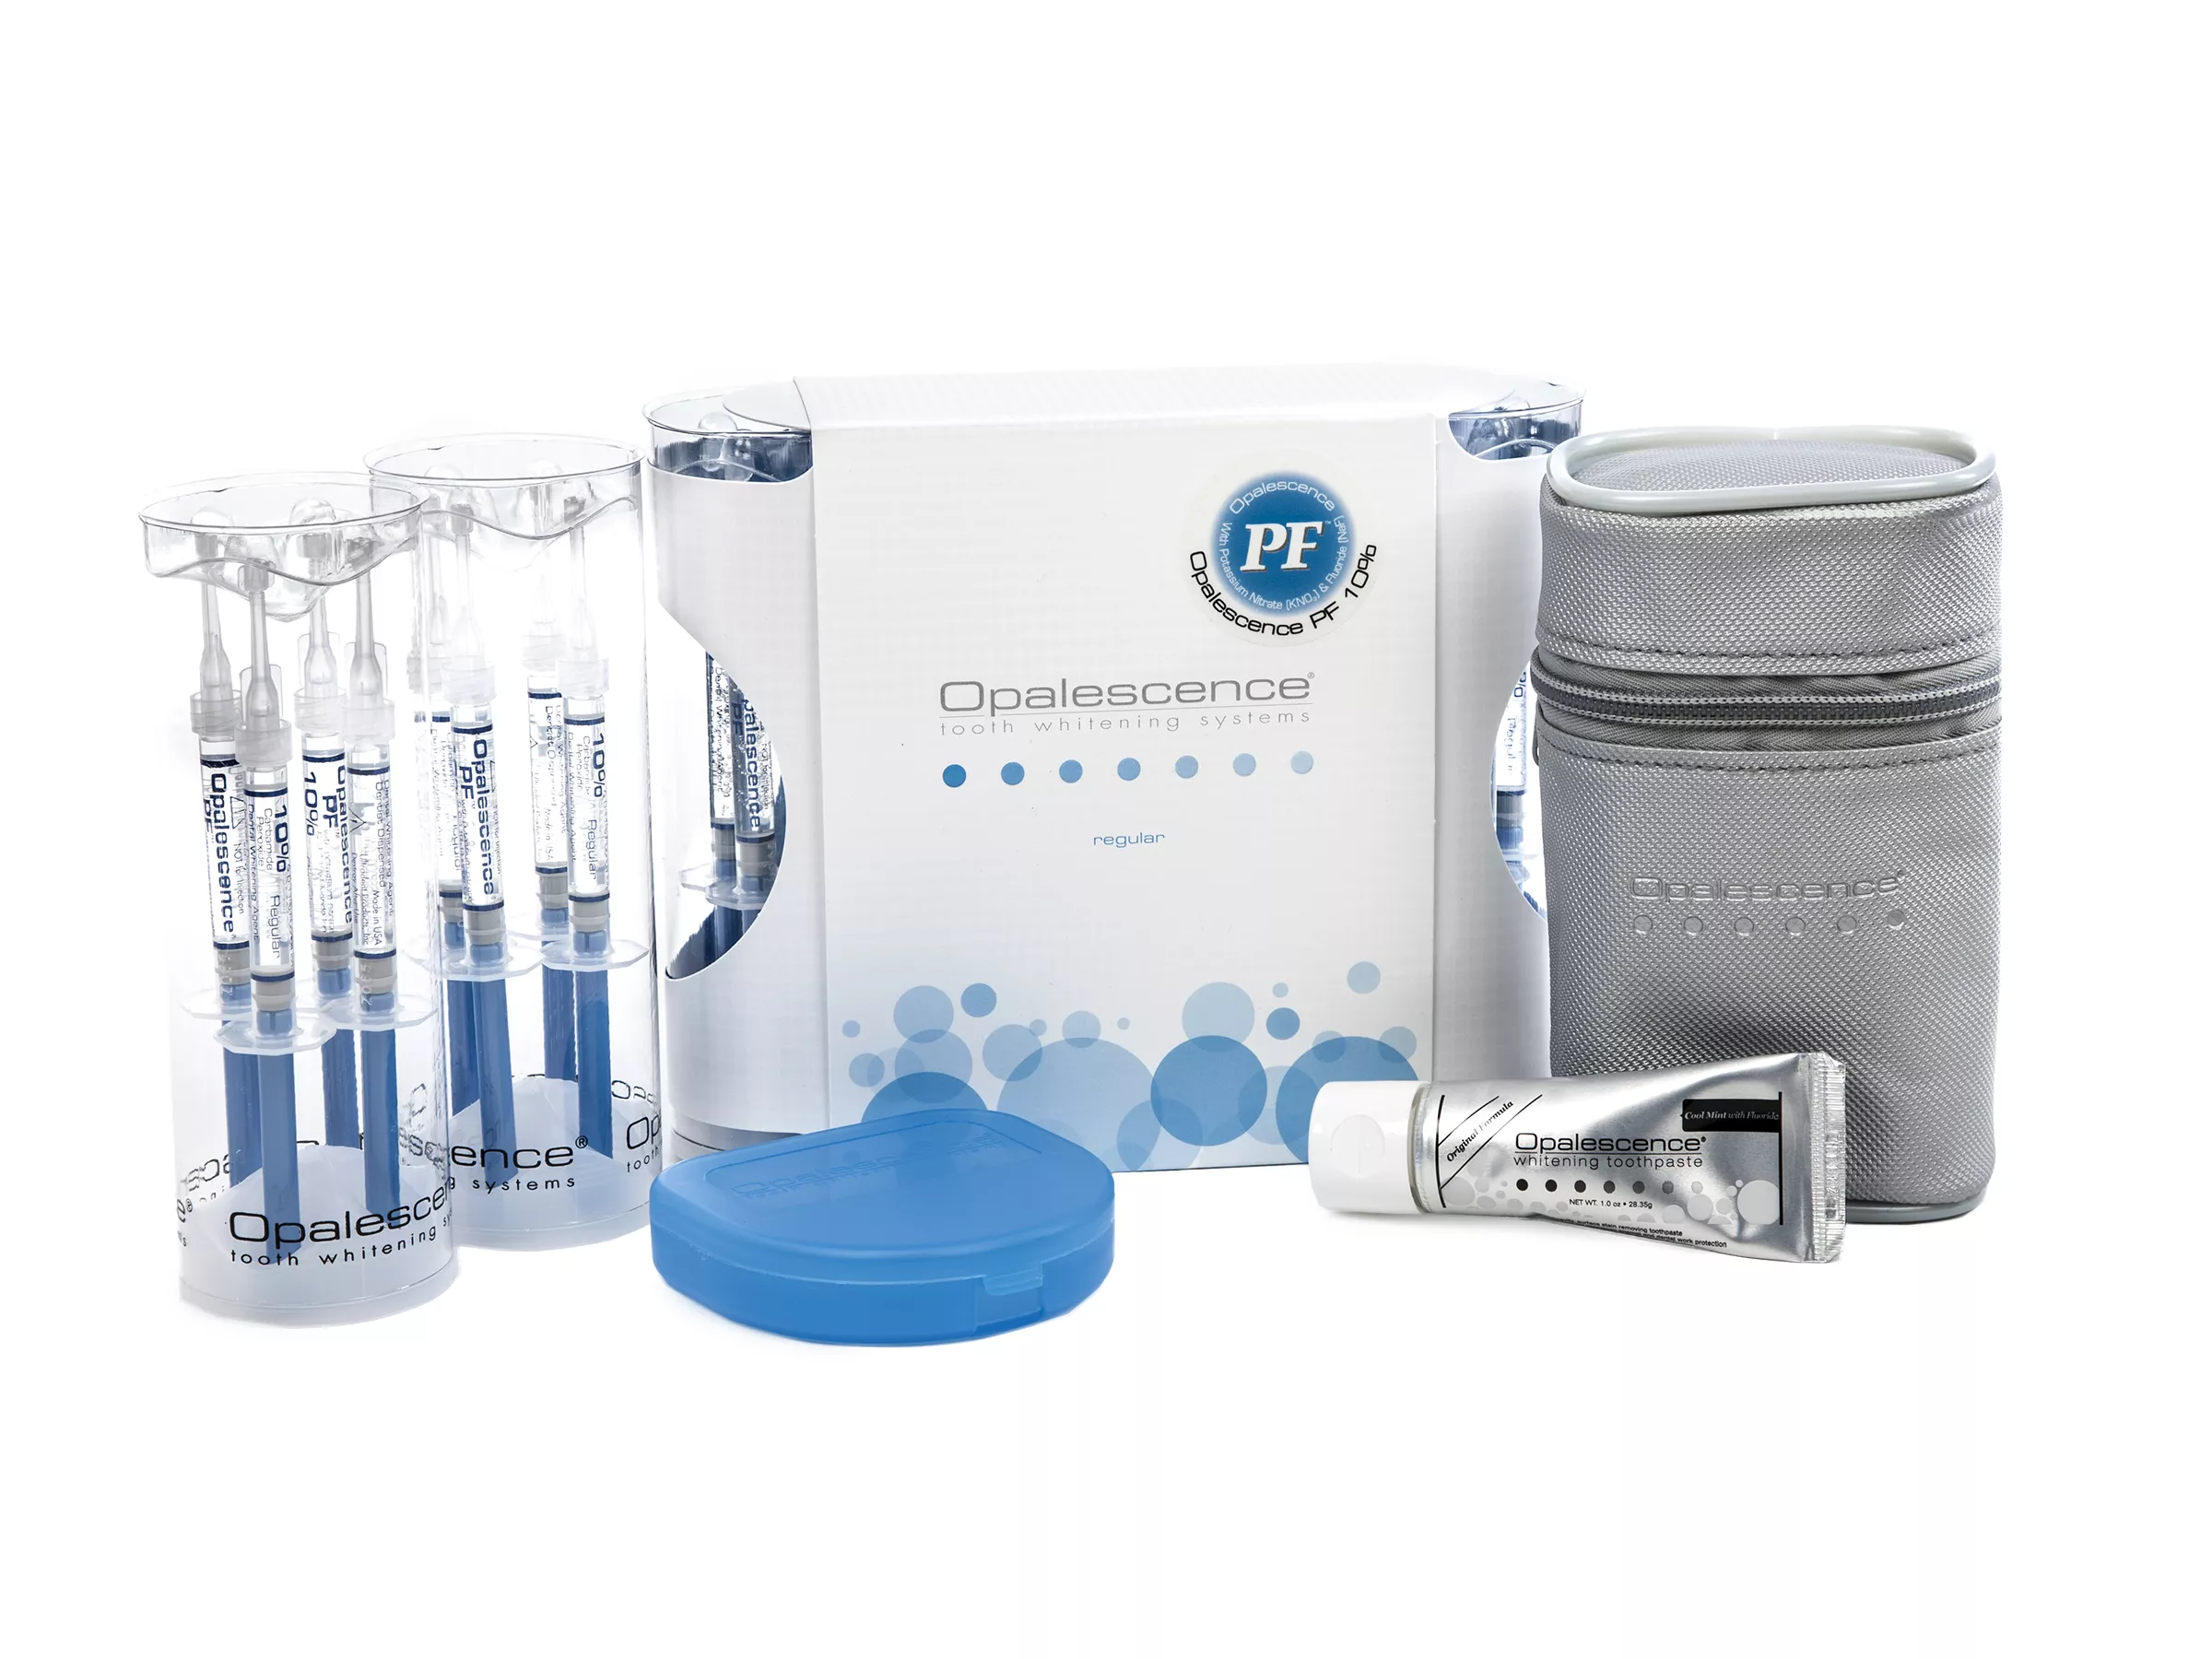 Opalescence PF 10% Regular Patient Kit - набор для домашнего отбеливания зубов